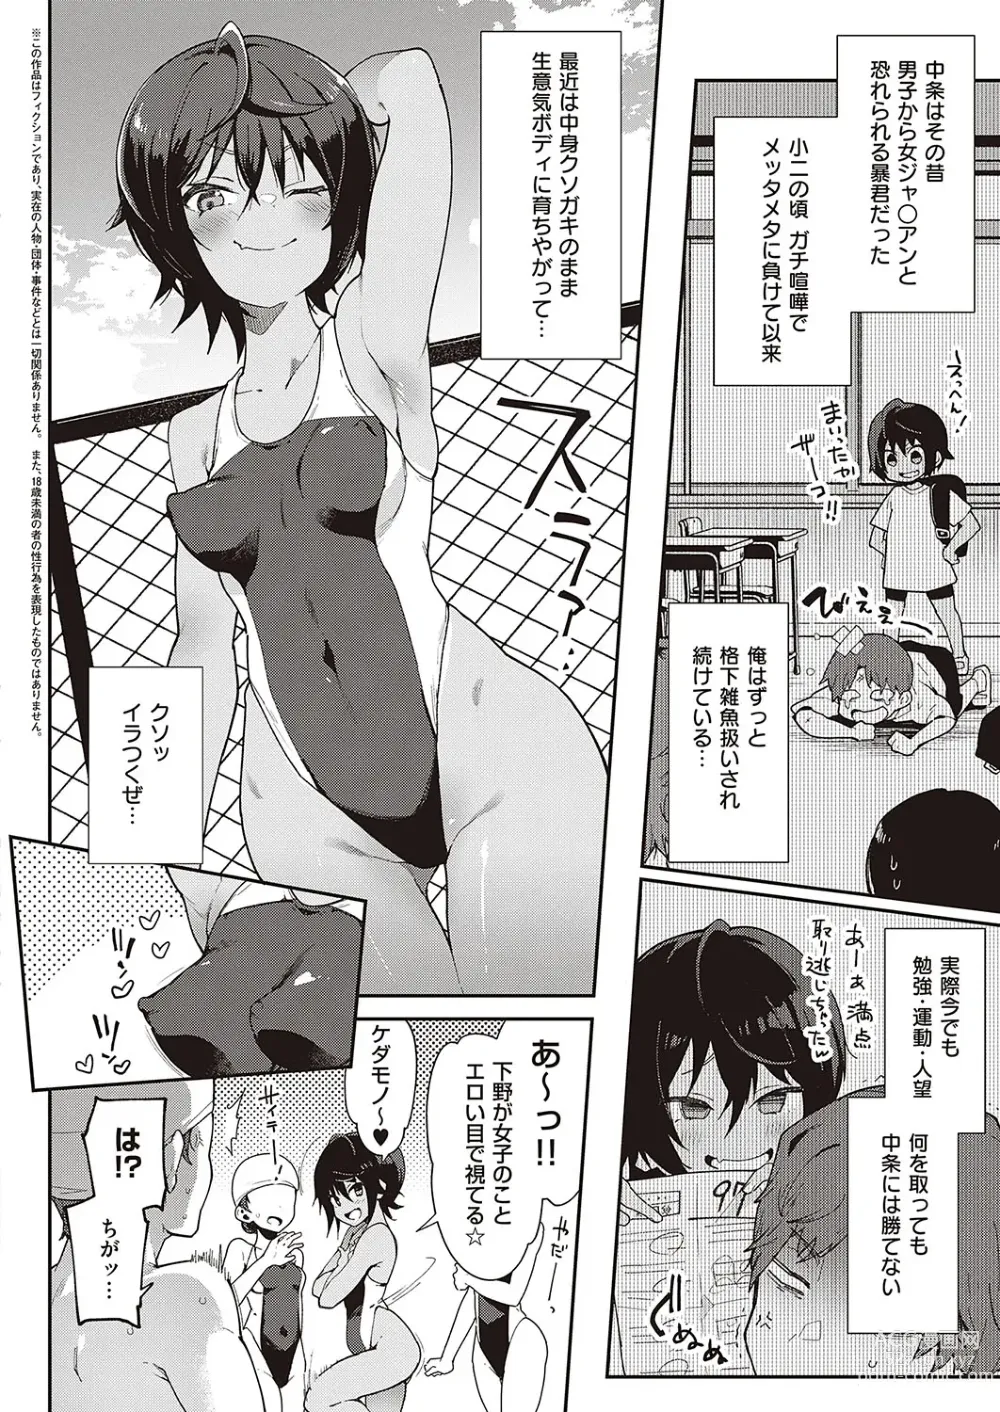 Page 2 of manga Namaiki Renshuubou